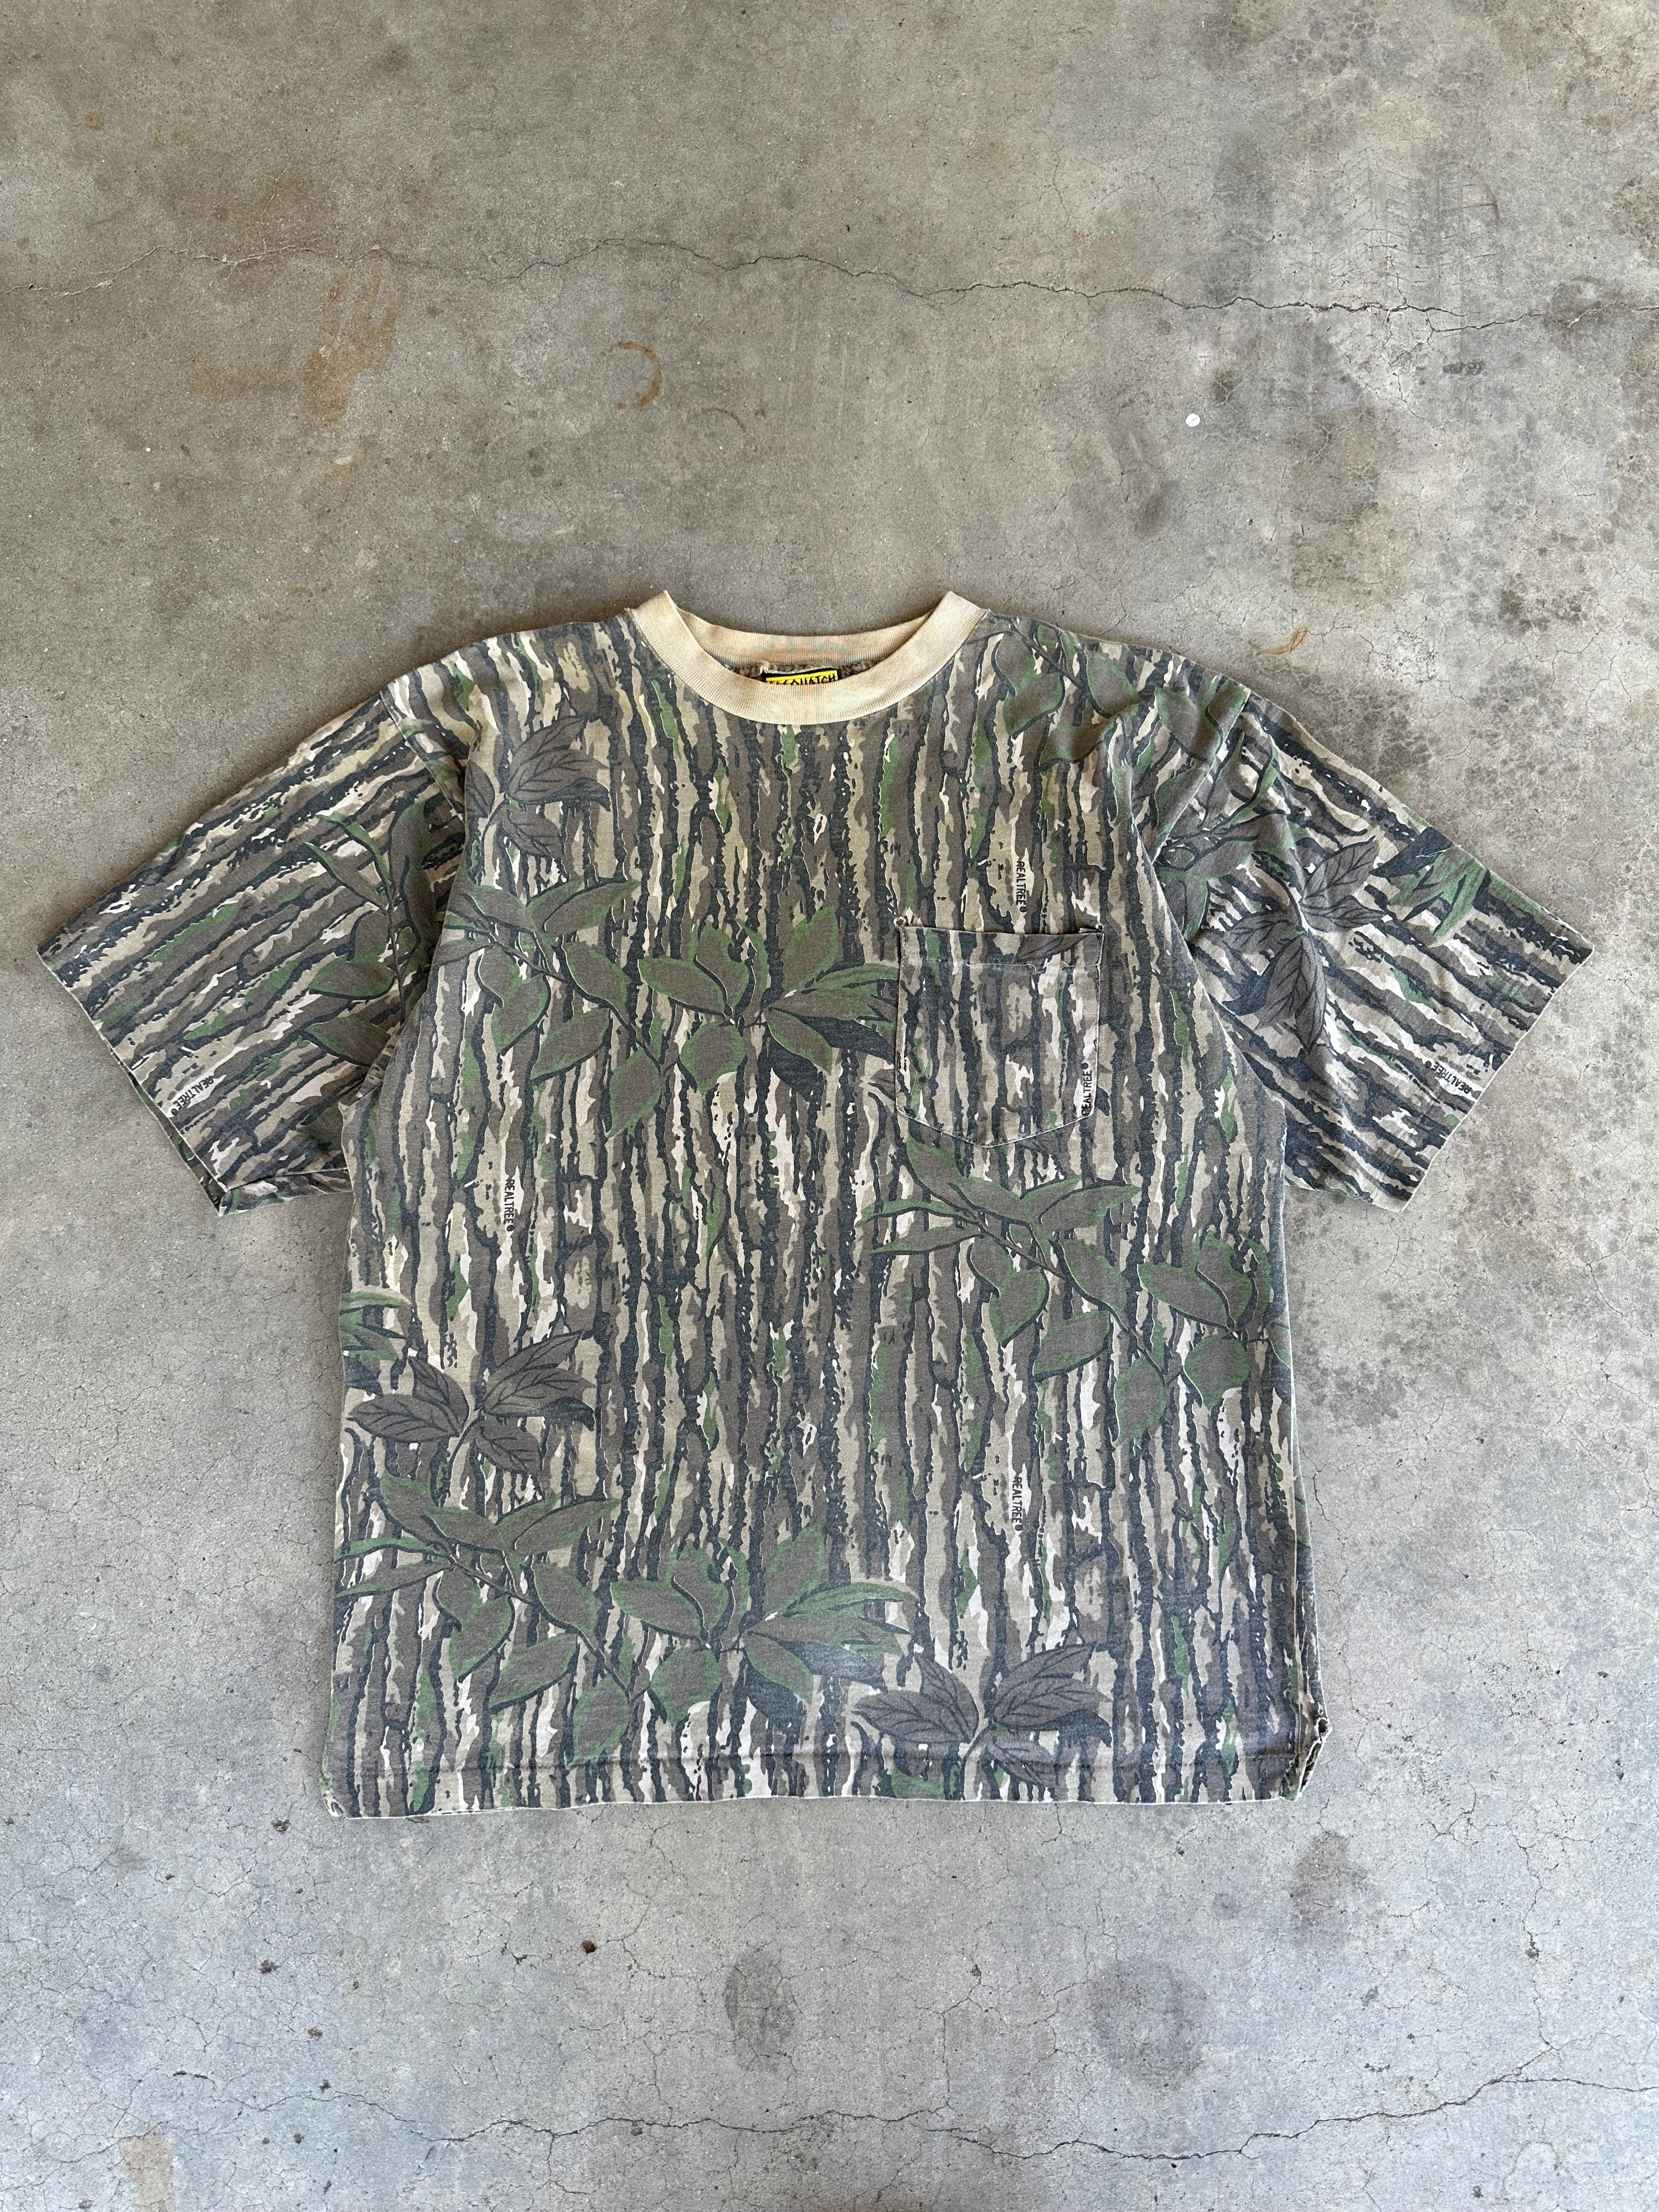 1990s Distressed Realtree Pocket T-Shirt (L/XL)